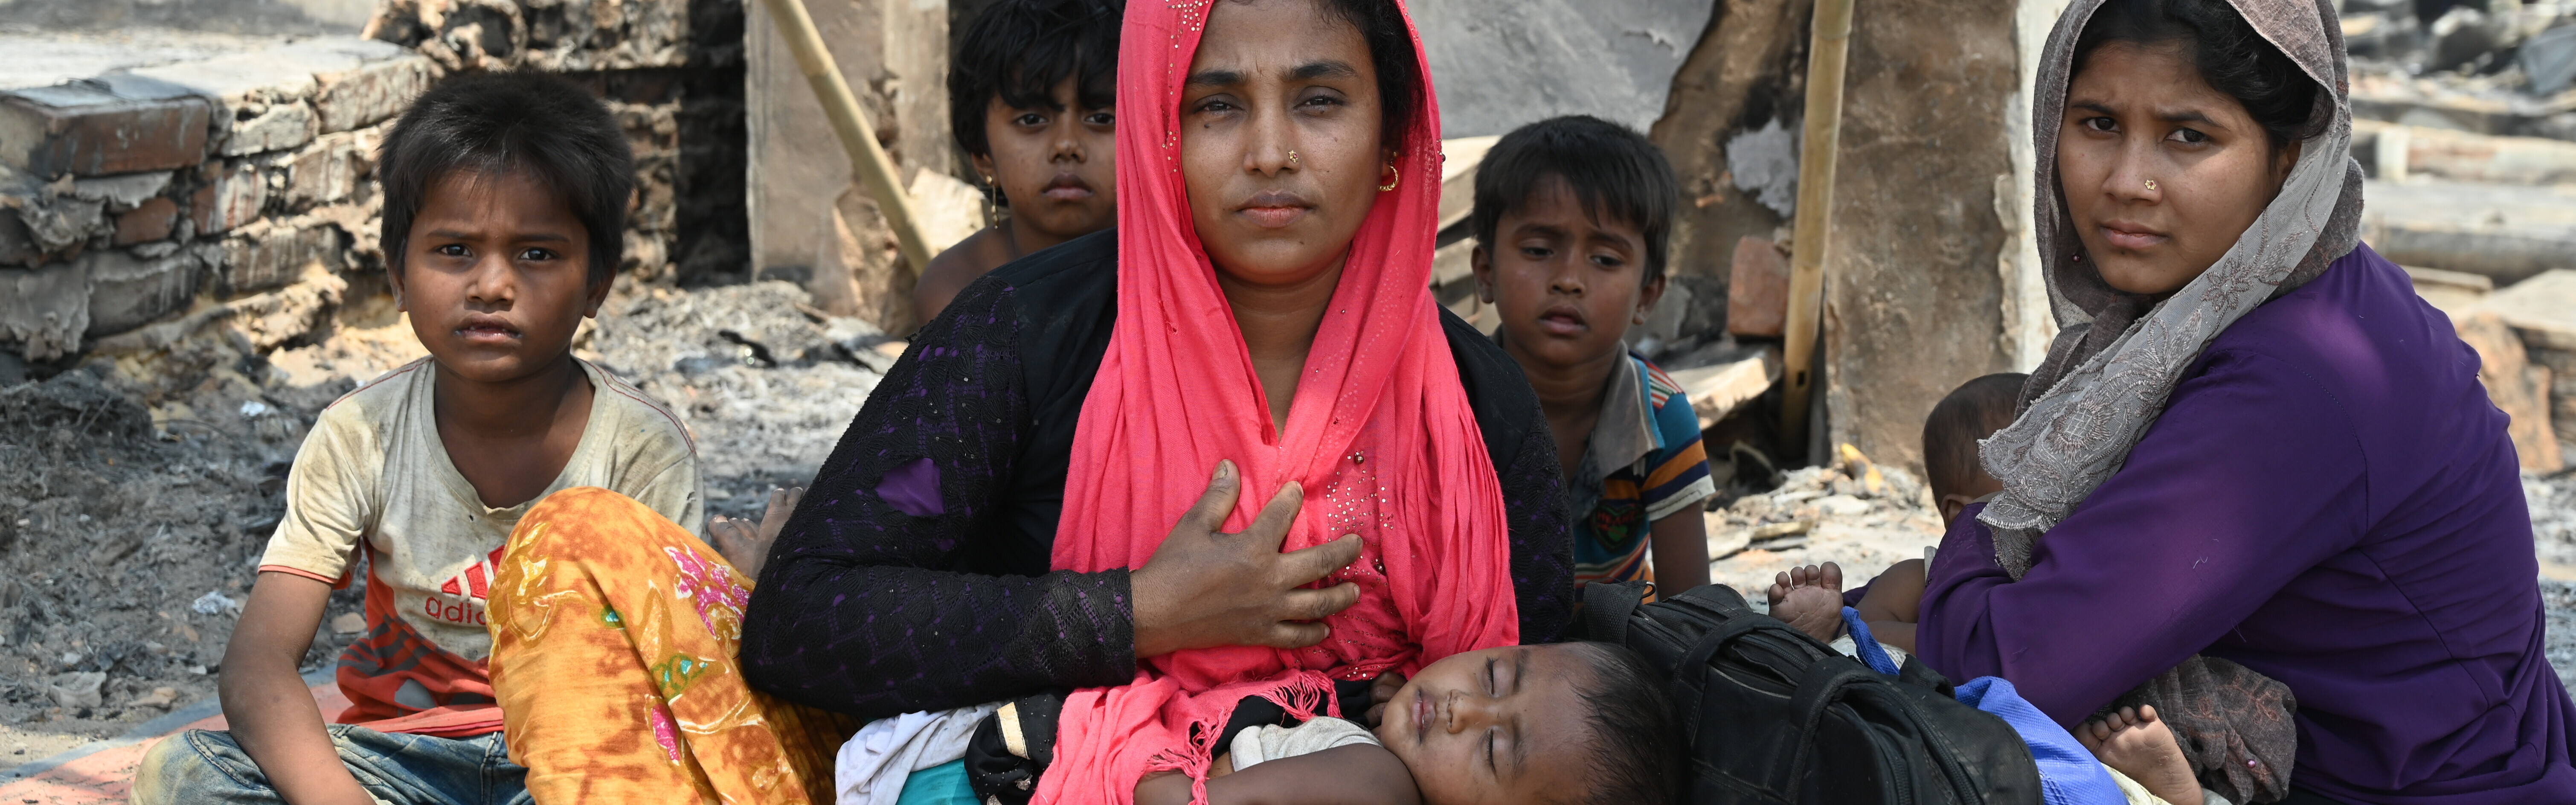 Frauen und Kinder nach dem großen Feuer im Rohingya-Flüchtlingscamp in Bangladesch